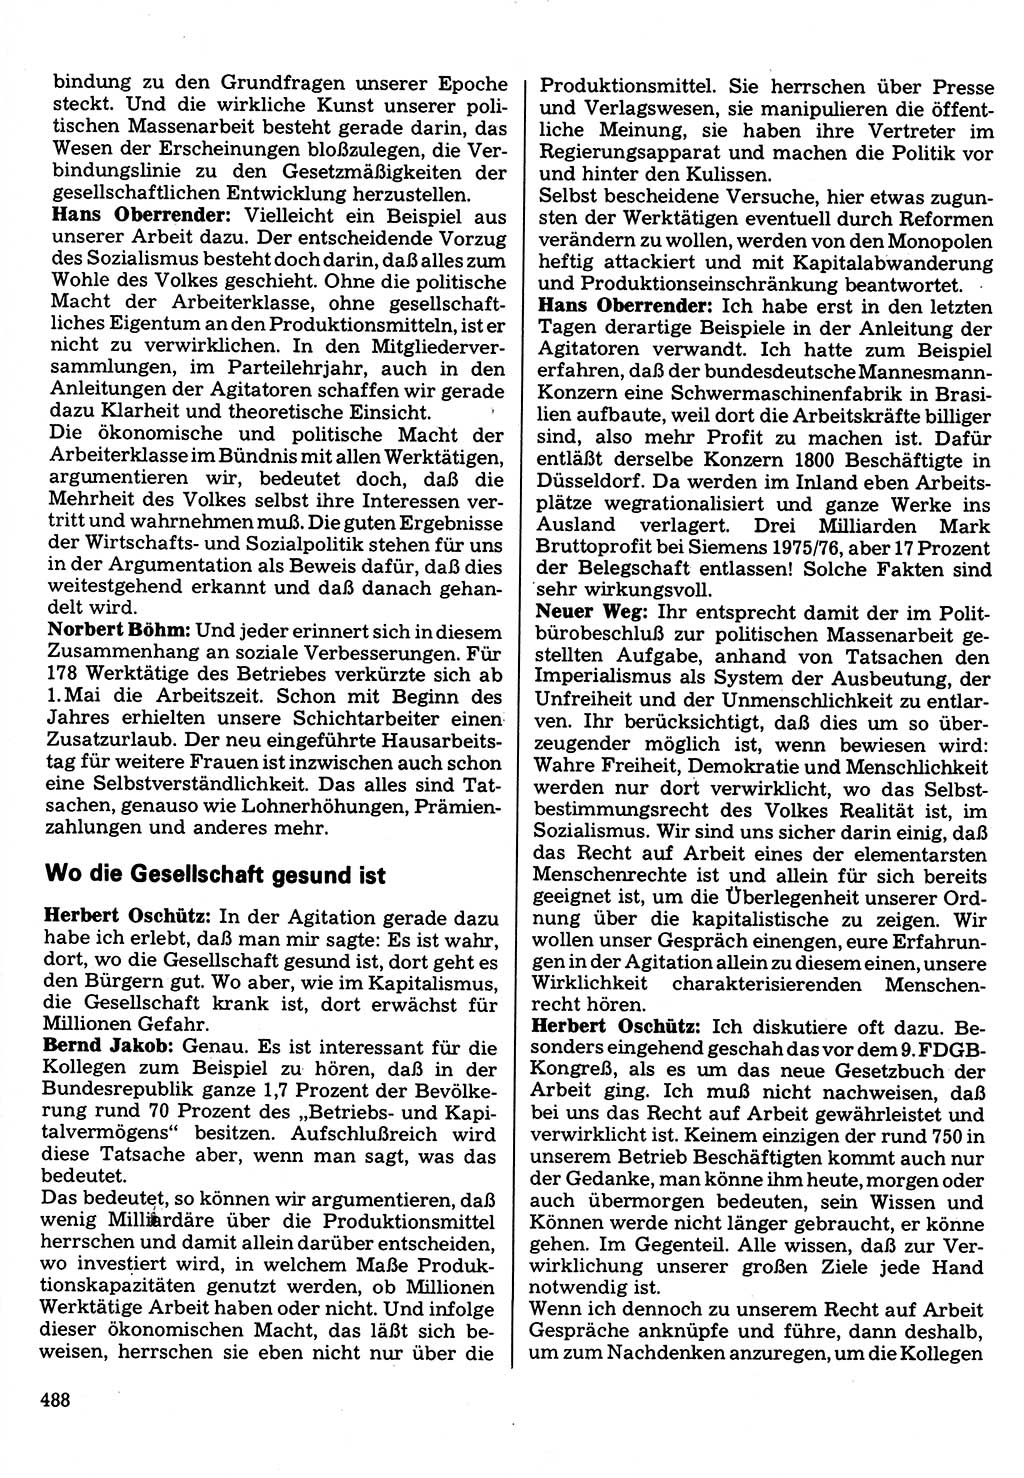 Neuer Weg (NW), Organ des Zentralkomitees (ZK) der SED (Sozialistische Einheitspartei Deutschlands) für Fragen des Parteilebens, 32. Jahrgang [Deutsche Demokratische Republik (DDR)] 1977, Seite 488 (NW ZK SED DDR 1977, S. 488)